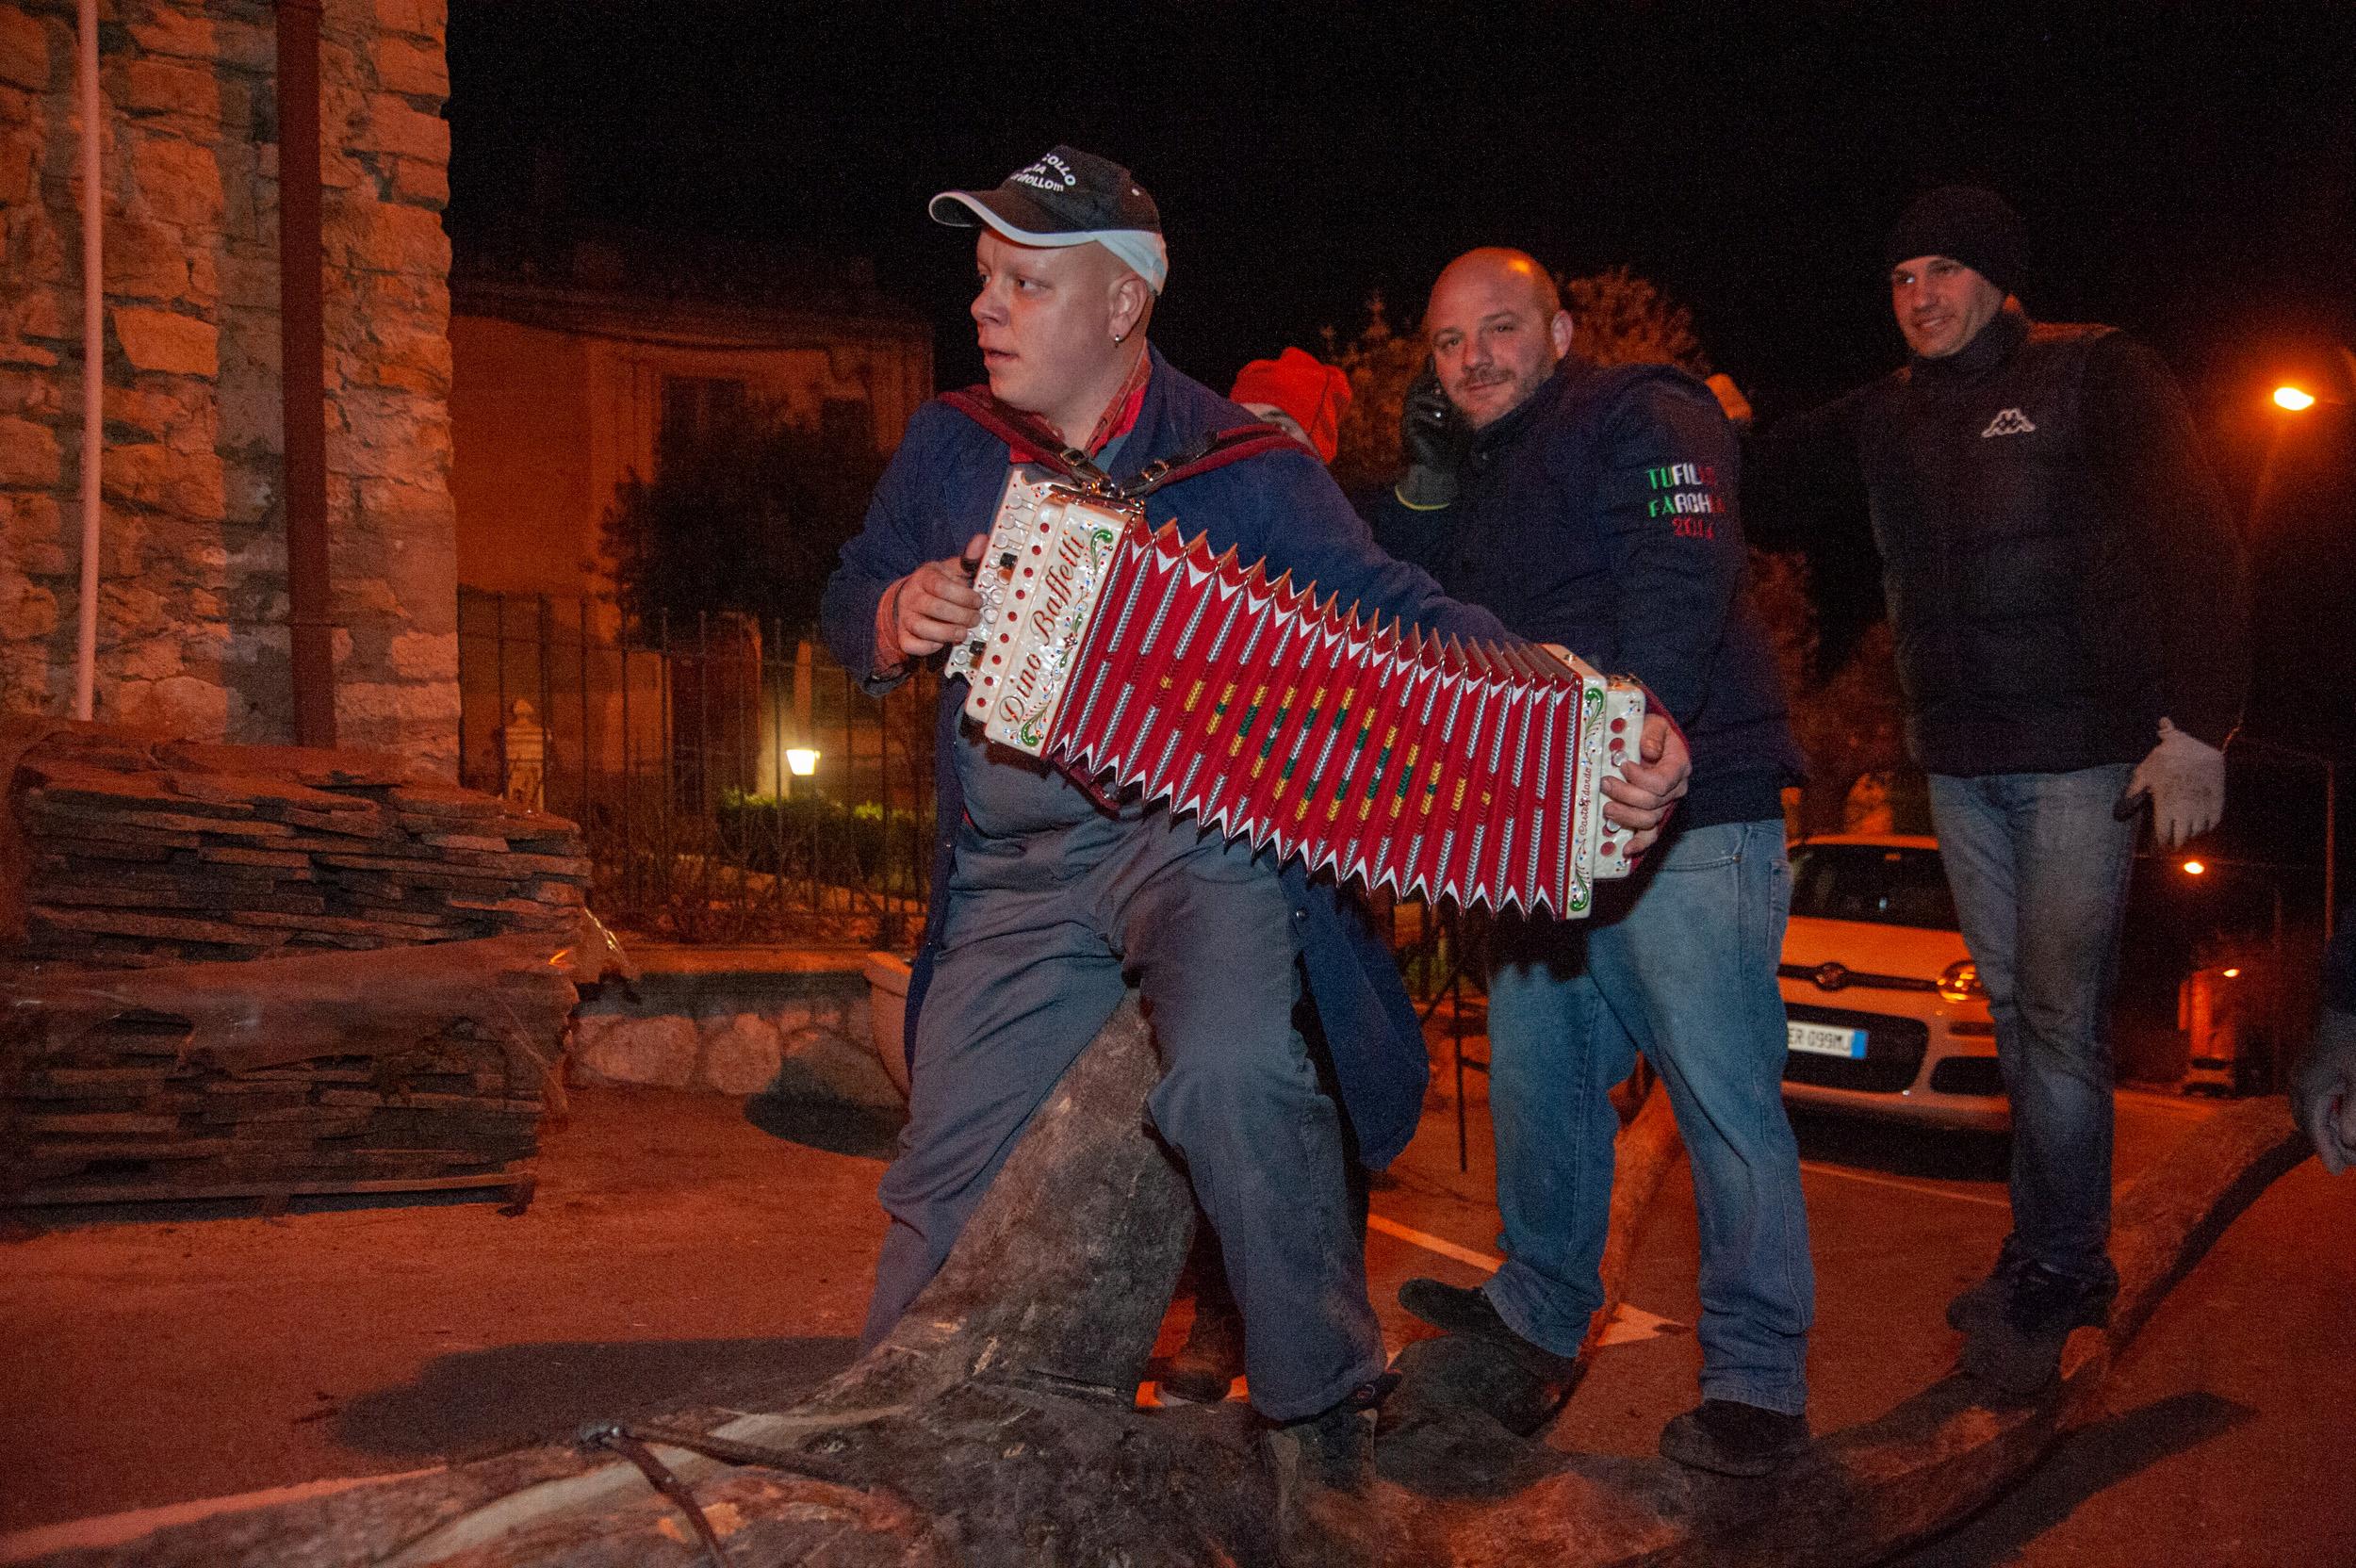 Roberto Monasterio, Festa durante la preparazione della farchia, 2014, fotografia digitale